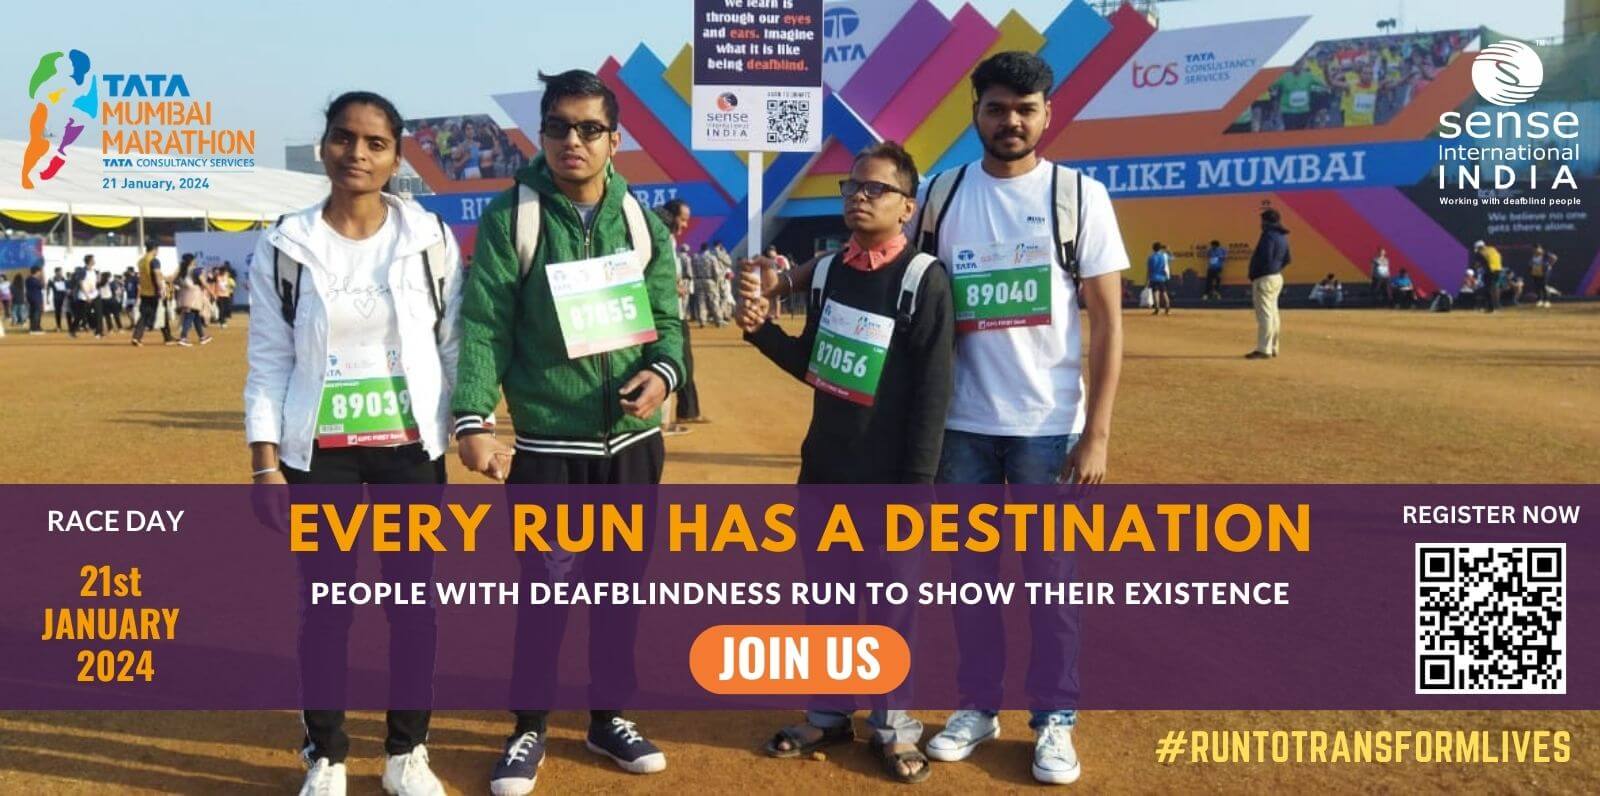 Sense India participating in Tata Mumbai Marathon 2024